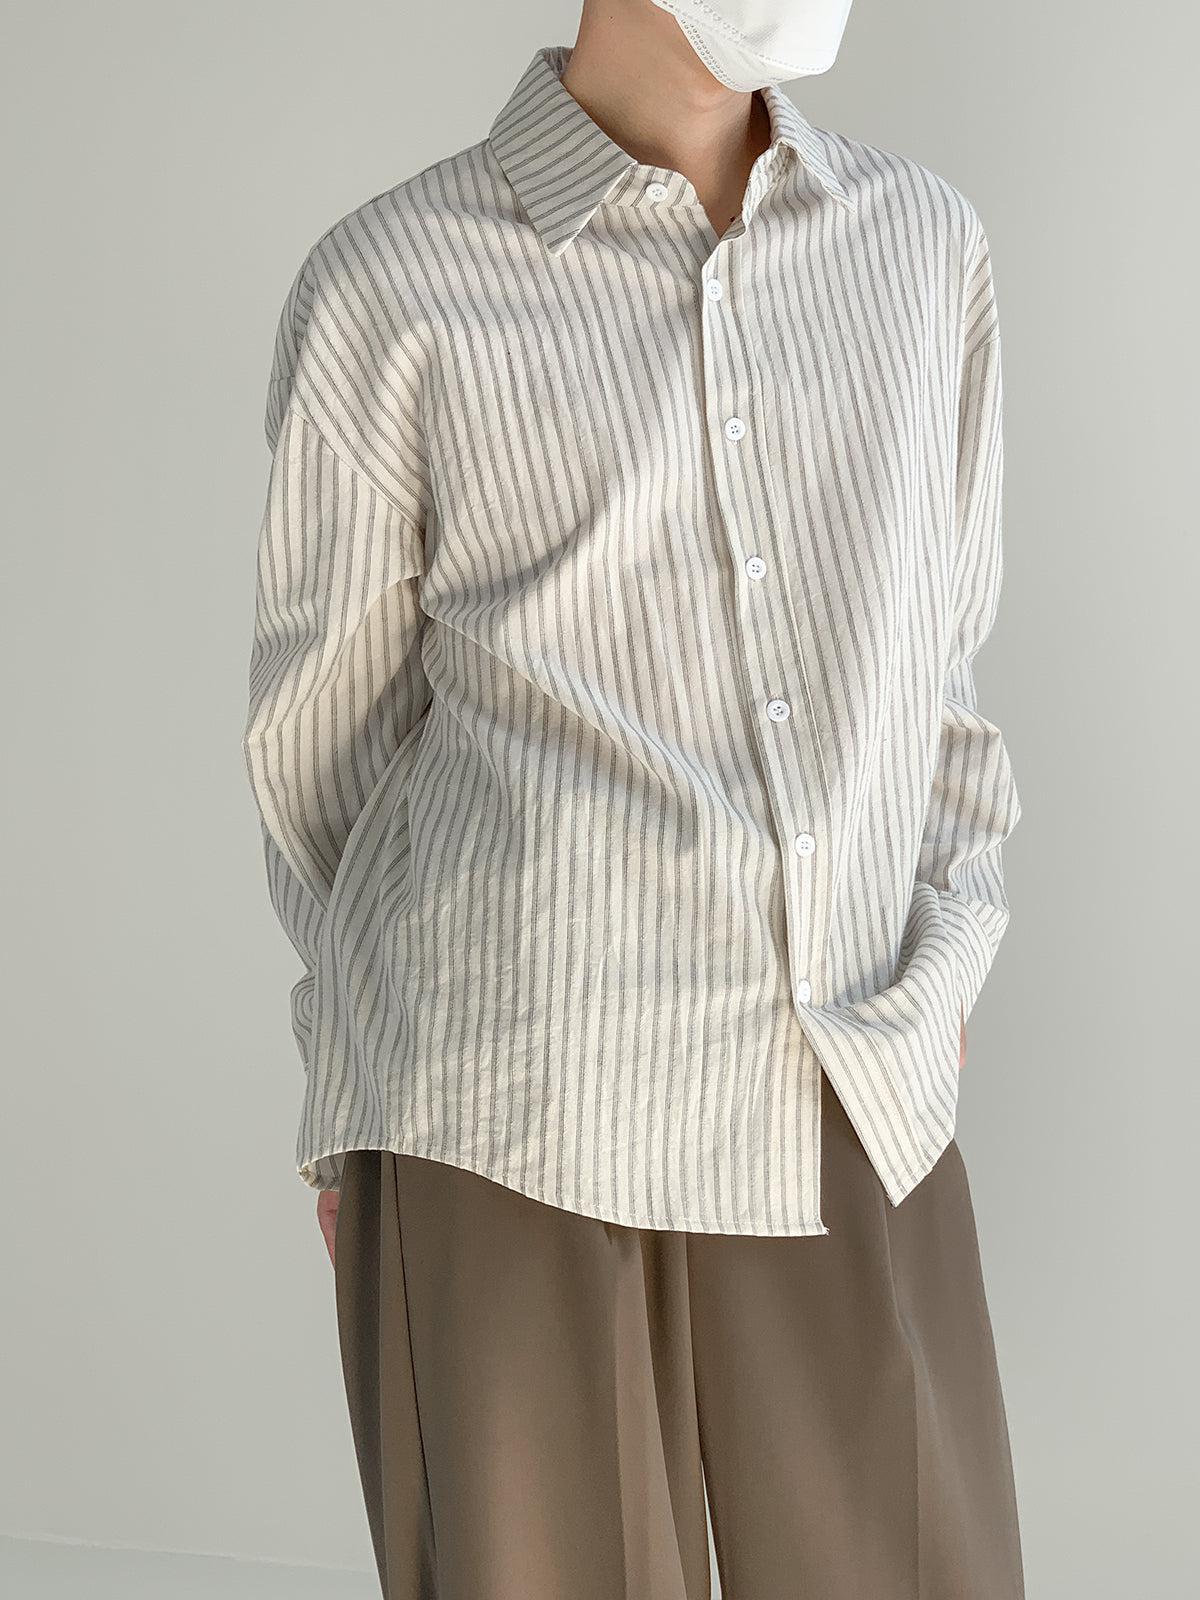 Zhou Thin Vertical Stripes Long Sleeve Shirt-korean-fashion-Shirt-Zhou's Closet-OH Garments